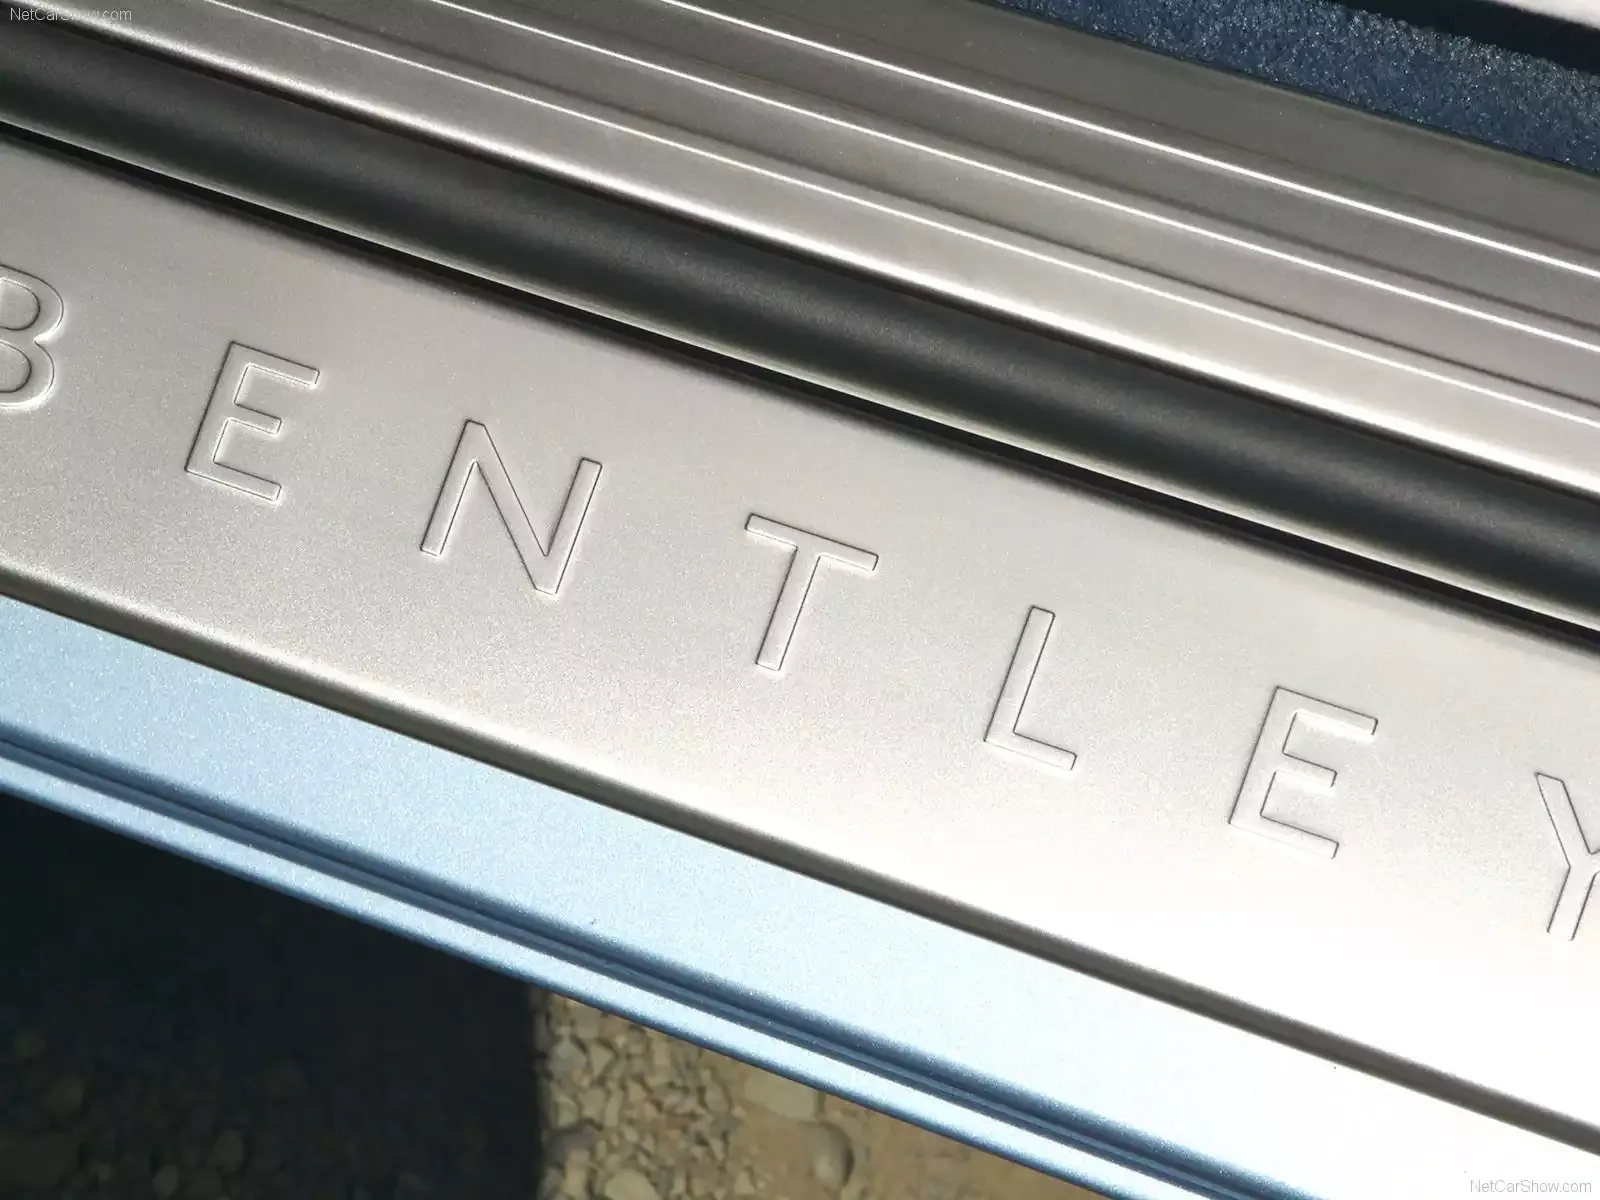 Hình ảnh xe ô tô Bentley Continental GT 2009 & nội ngoại thất